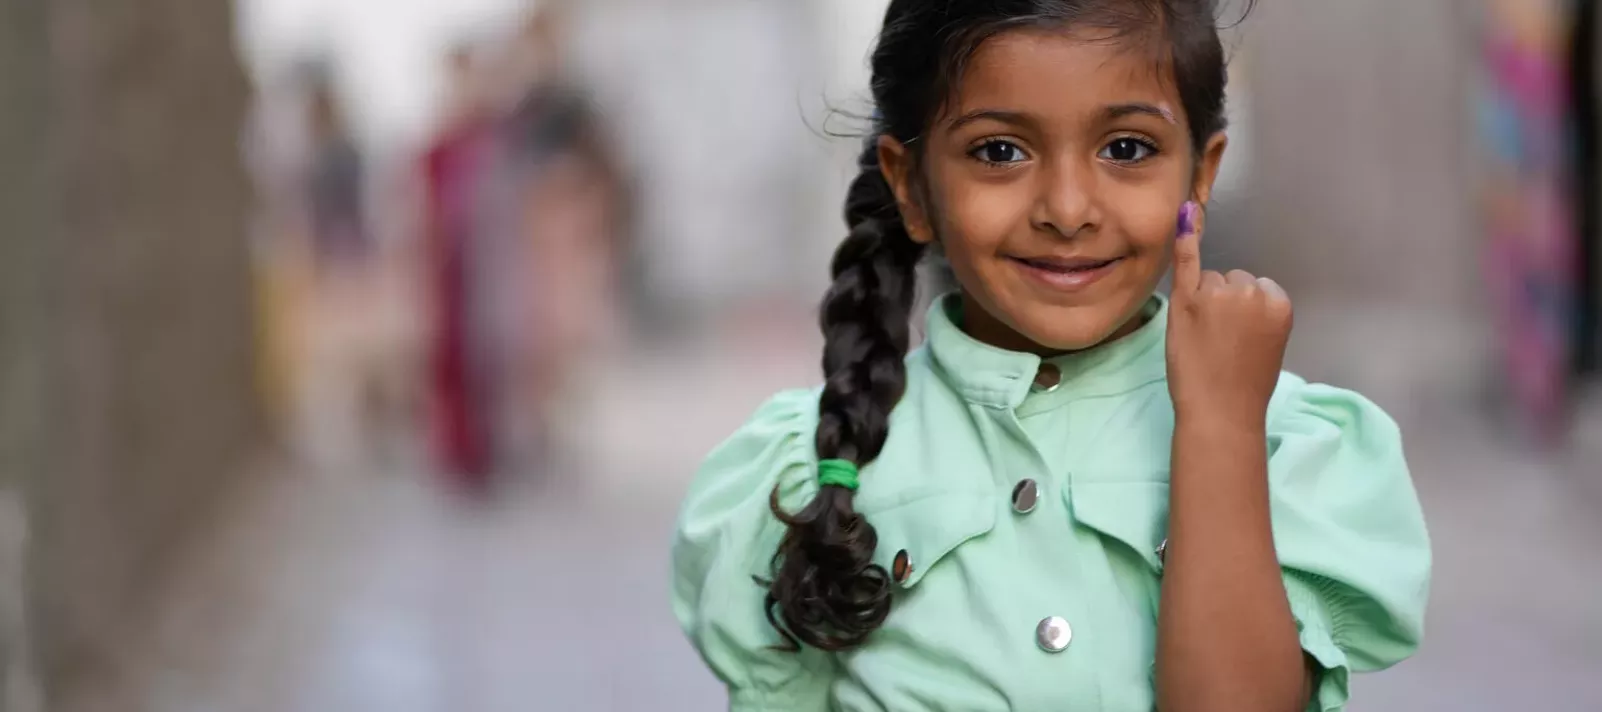 Au Yémen, une petite fille rayonne de fierté en montrant la marque sur son doigt qui indique qu’elle a été vaccinée contre la poliomyélite.